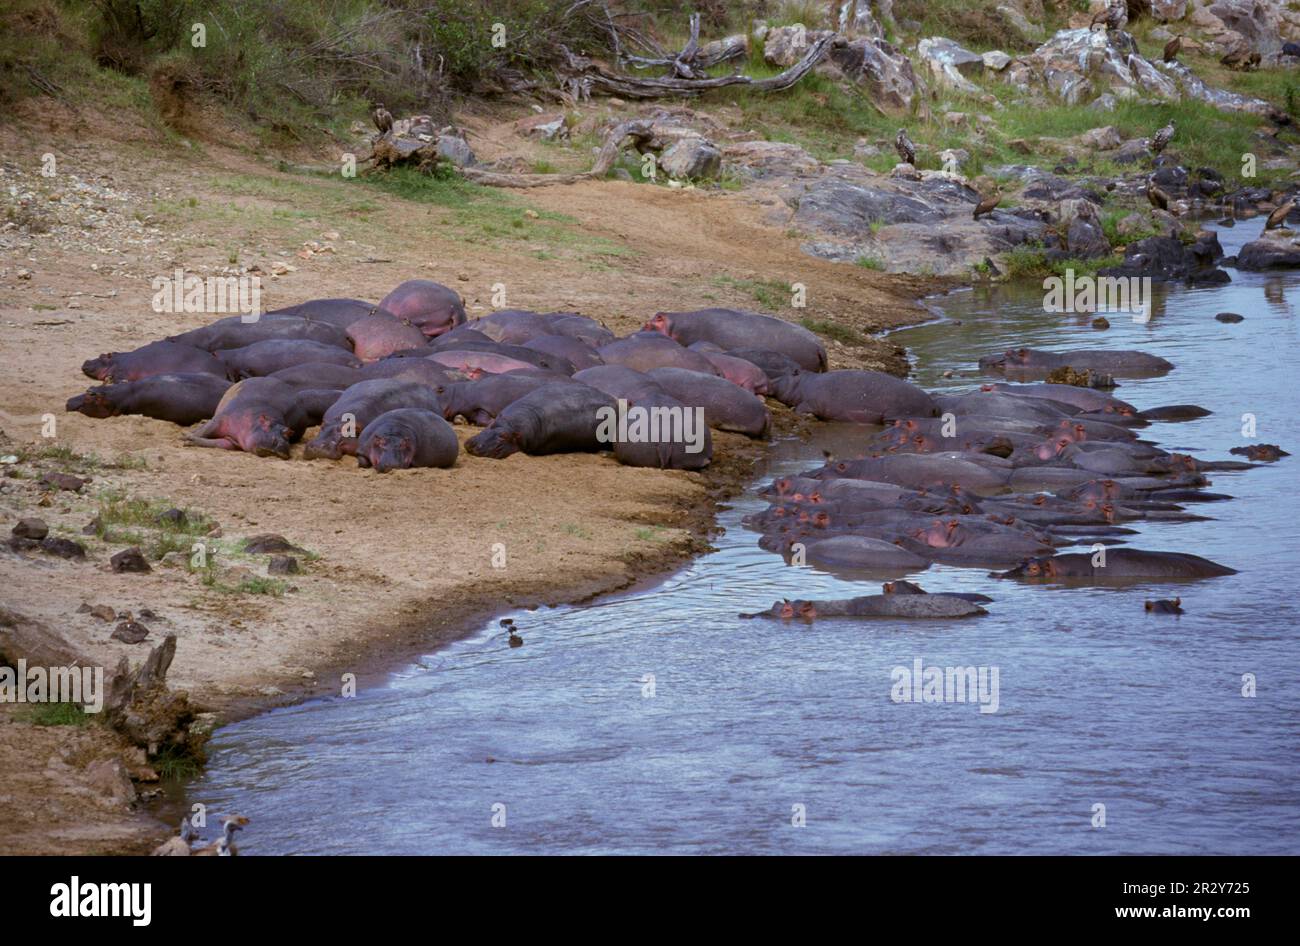 Flusspferde (Hippopotamus amphibious) Herde am Ufer des Flusses Mara, Kenia, Flusspferde, Flusspferde, Huftiere (Klauentiere) Stockfoto